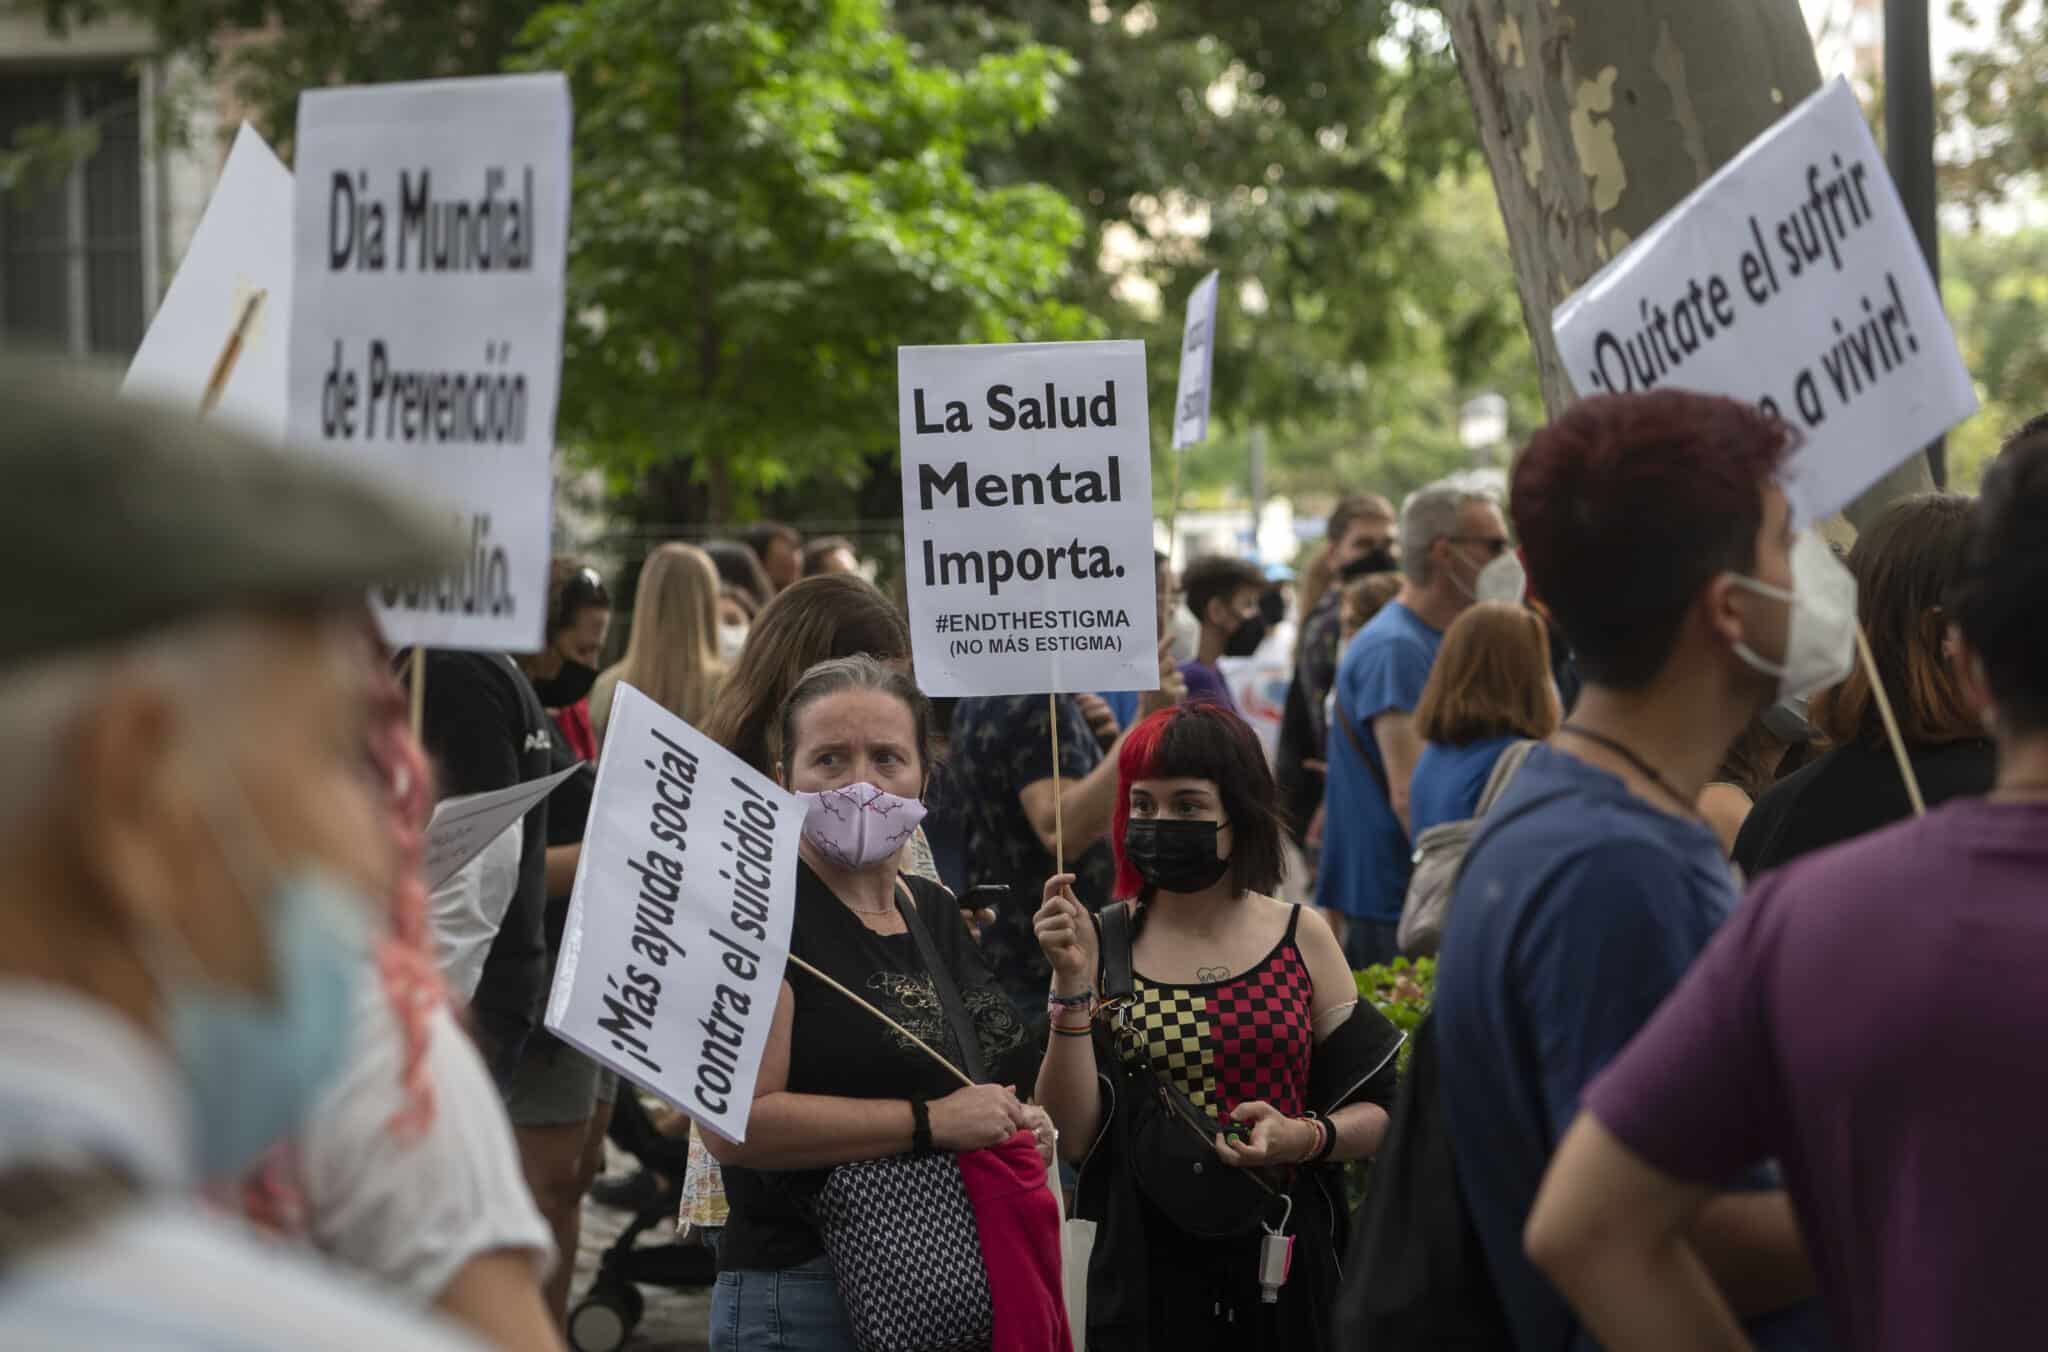 Una mujer sostiene una pancarta donde se lee "La Salud Mental Importa", en una manifestación por un Plan Nacional de Prevención del Suicidio.